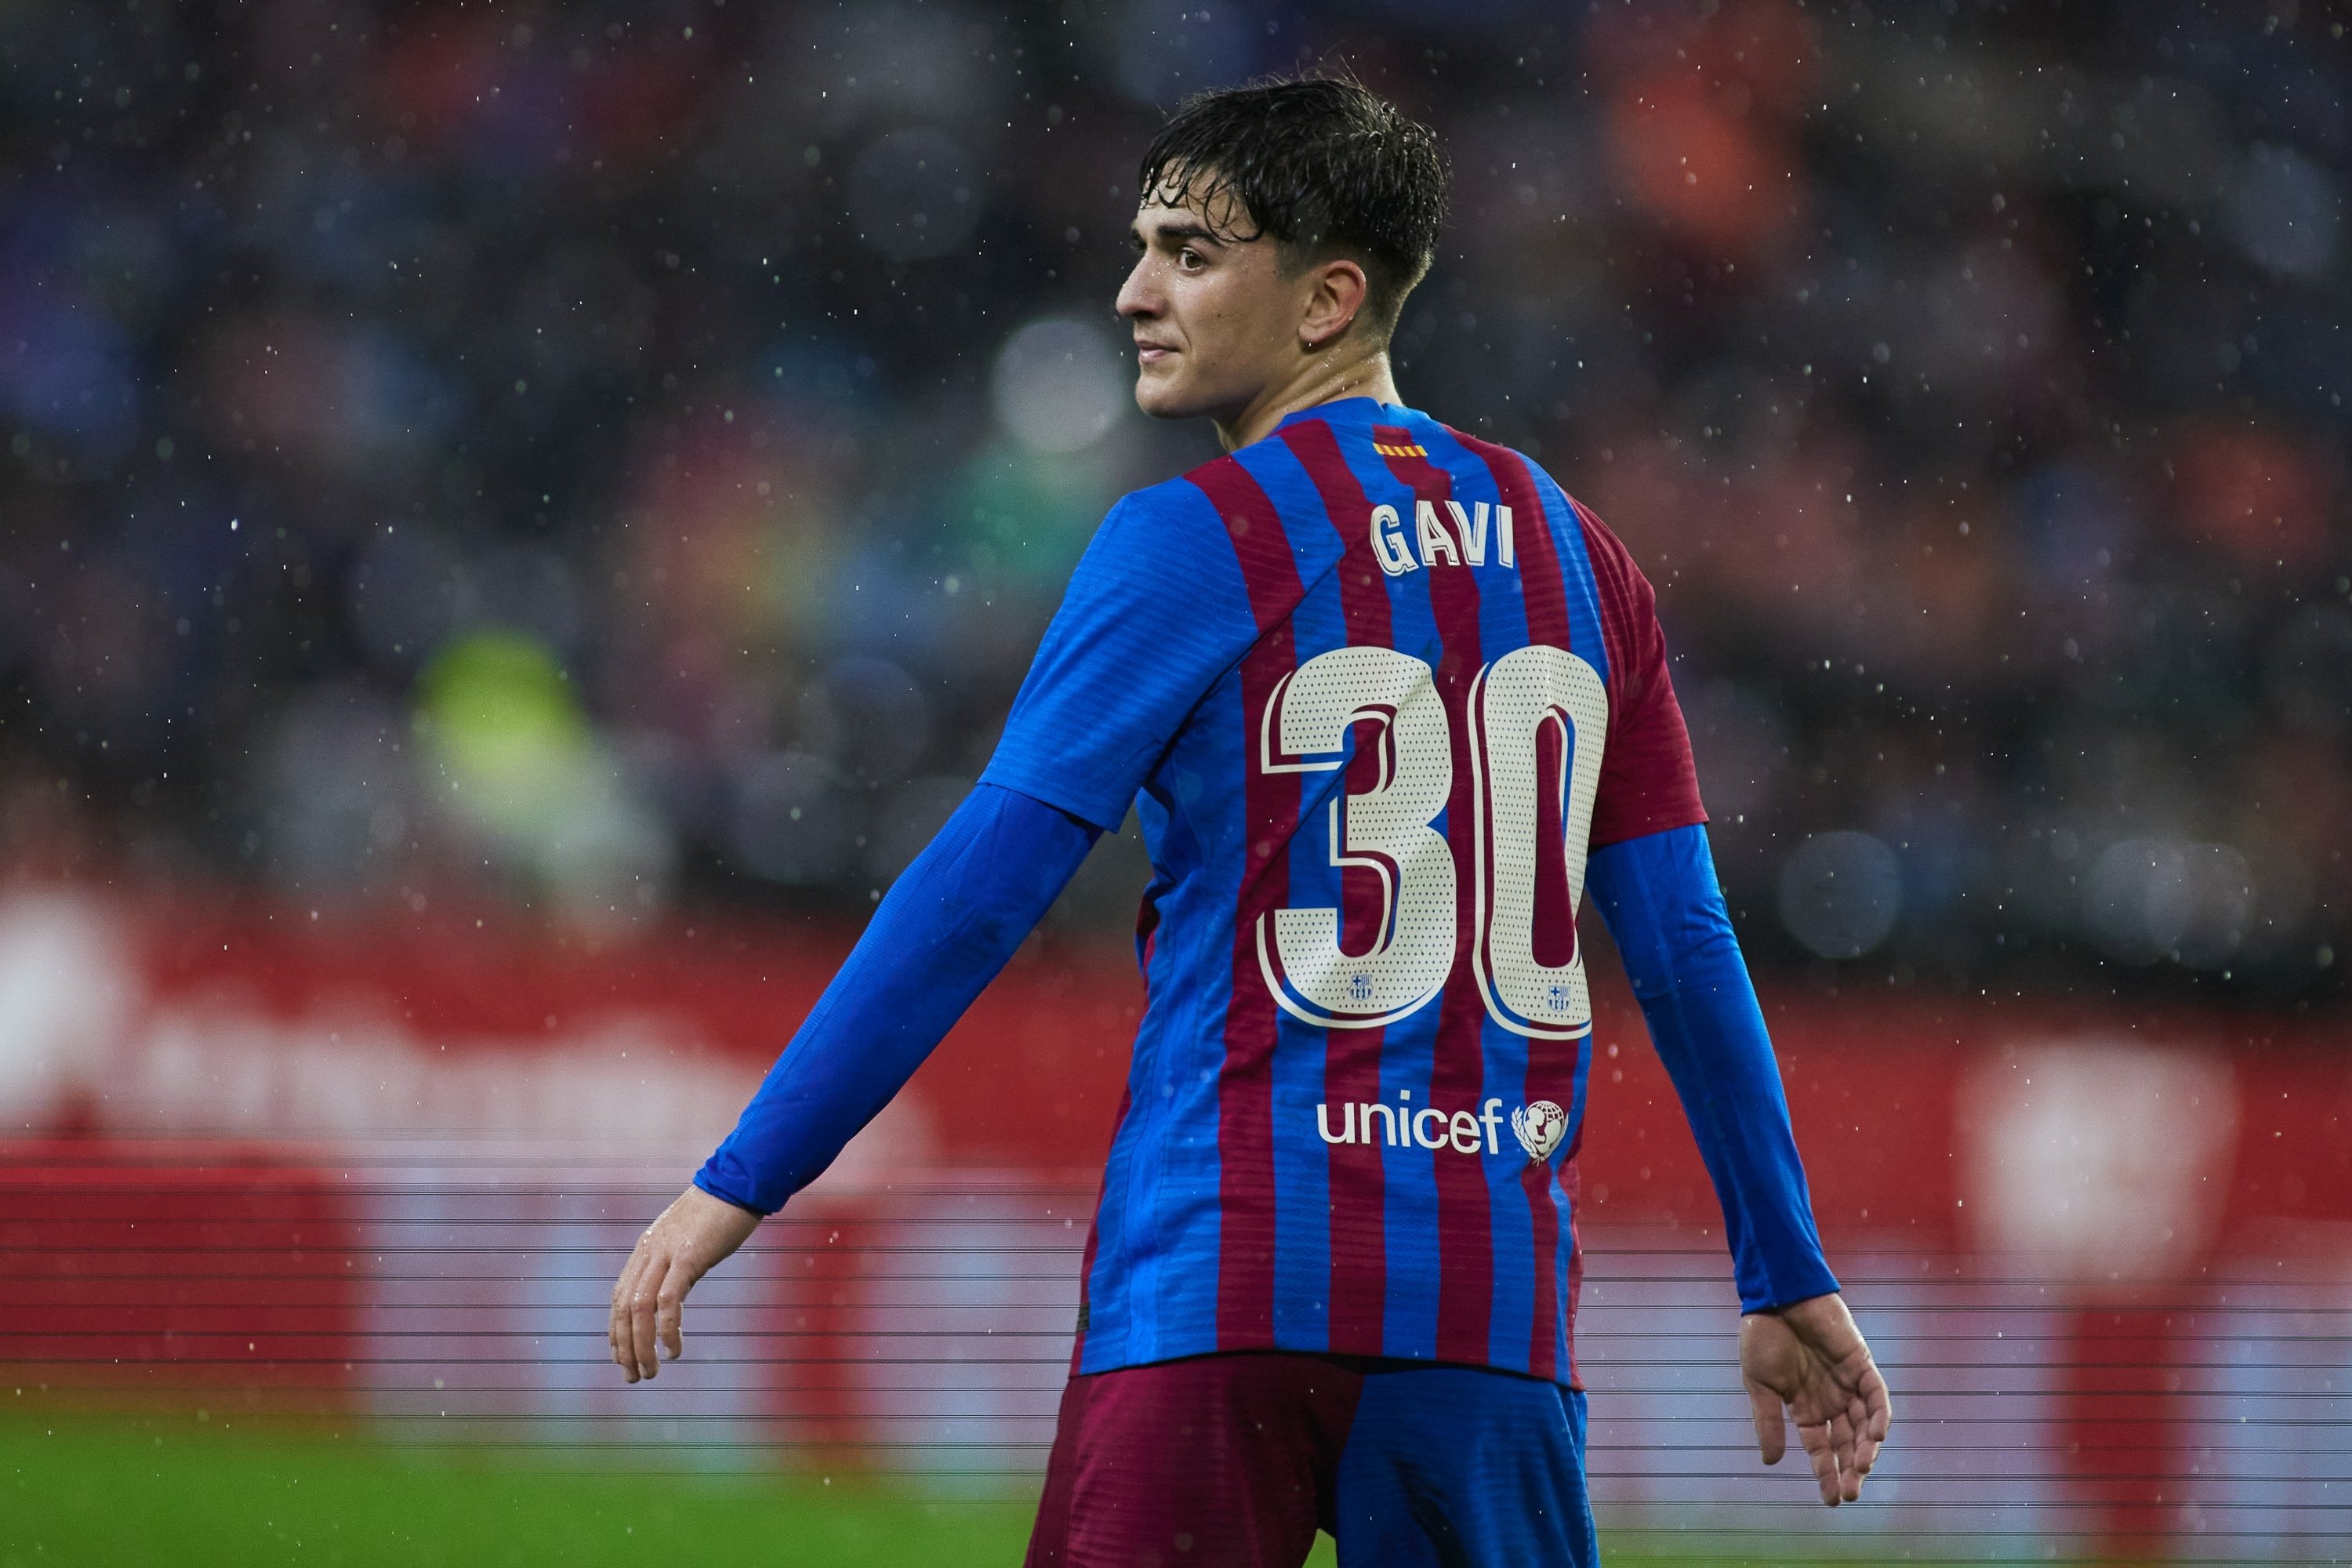 Gavi ha dicho “no”, sigue sin renovar con el Barça, pero acaba de rechazar una oferta que le hacía millonario